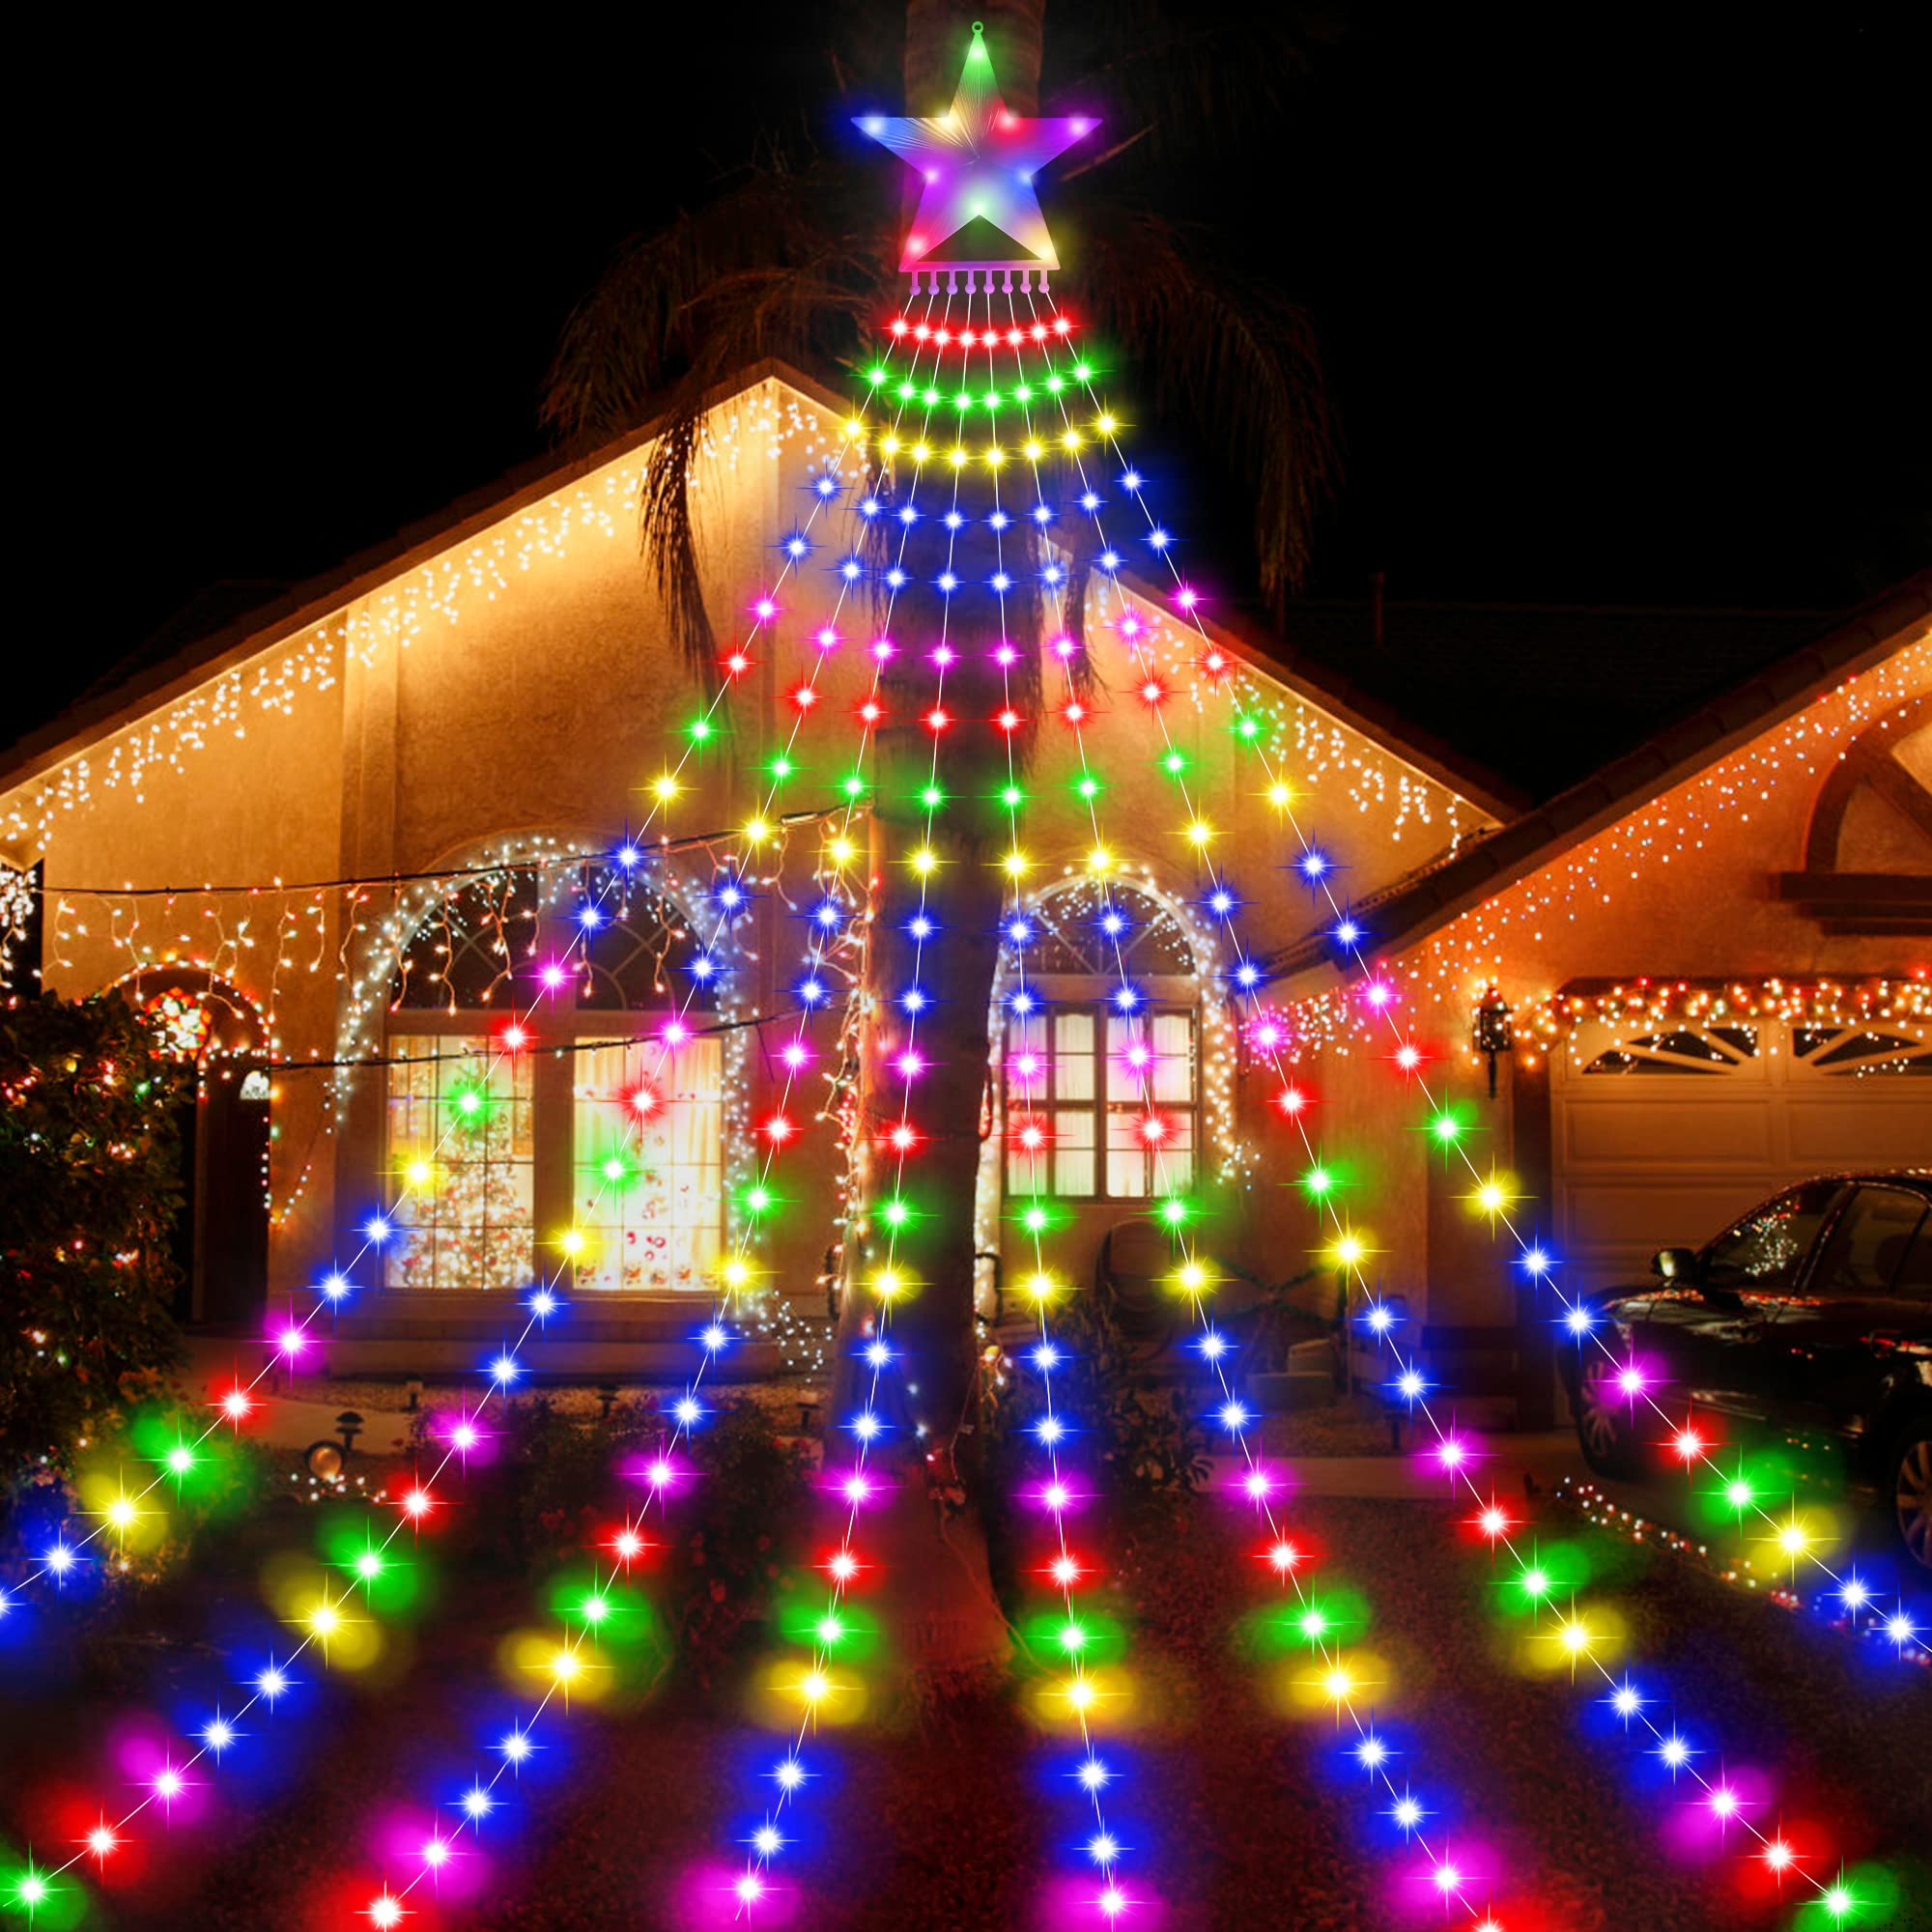 Haute Qualité BELLALICHT Guirlande lumineuse extérieure intérieure, 3,5M de hauteur 8 guirlandes 298 LED Eclairage du sapin de Noël avec étoile 8 modes Guirlande lumineuse à jet - Multicolore PqjmAXFqo pas cher